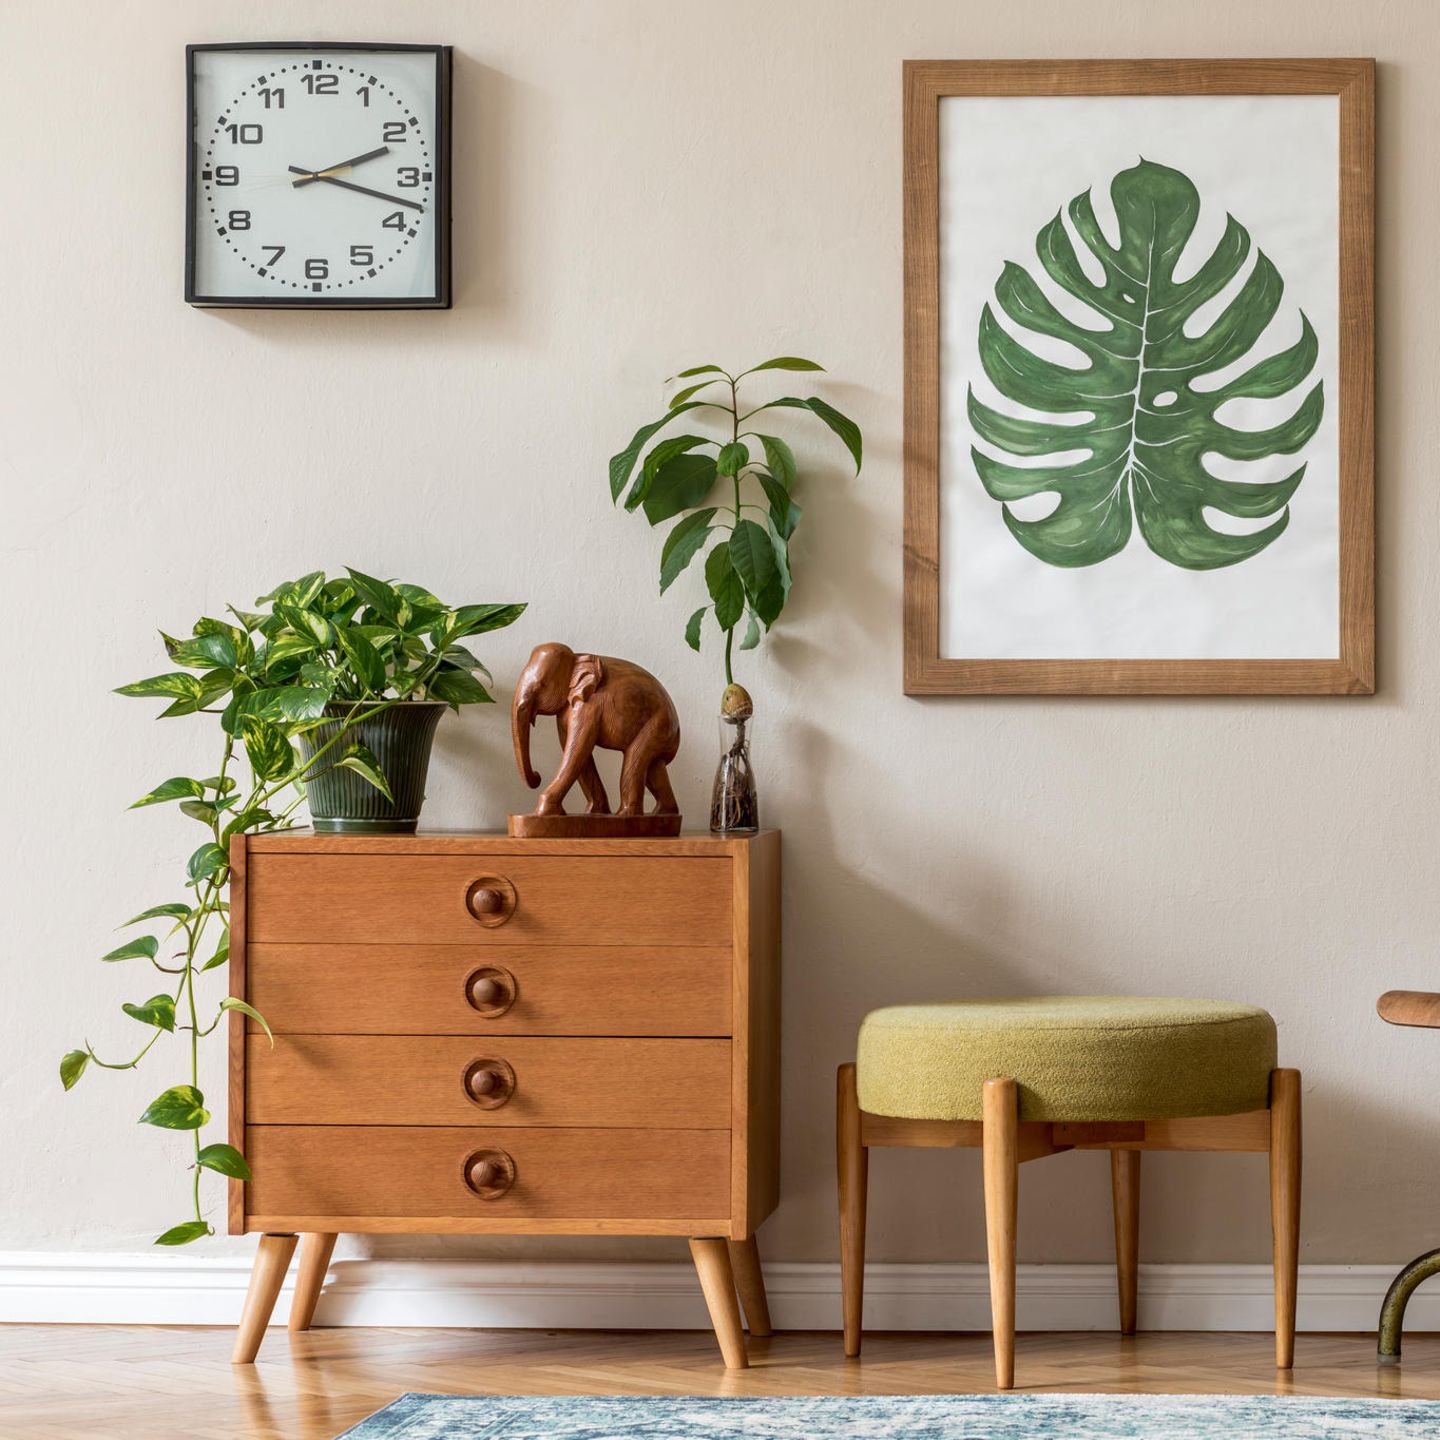 Der 70s Look liegt gerade total im Trend und eignet sich mit seinen warmen Brauntönen besonders gut, deine Pflanzen in Szene zu setzten. Wenn du magst, kannst du deine Pflanzen an die Wand bringen, indem du Bilder aufhängst, wie dieses schöne Monstera-Blatt. 